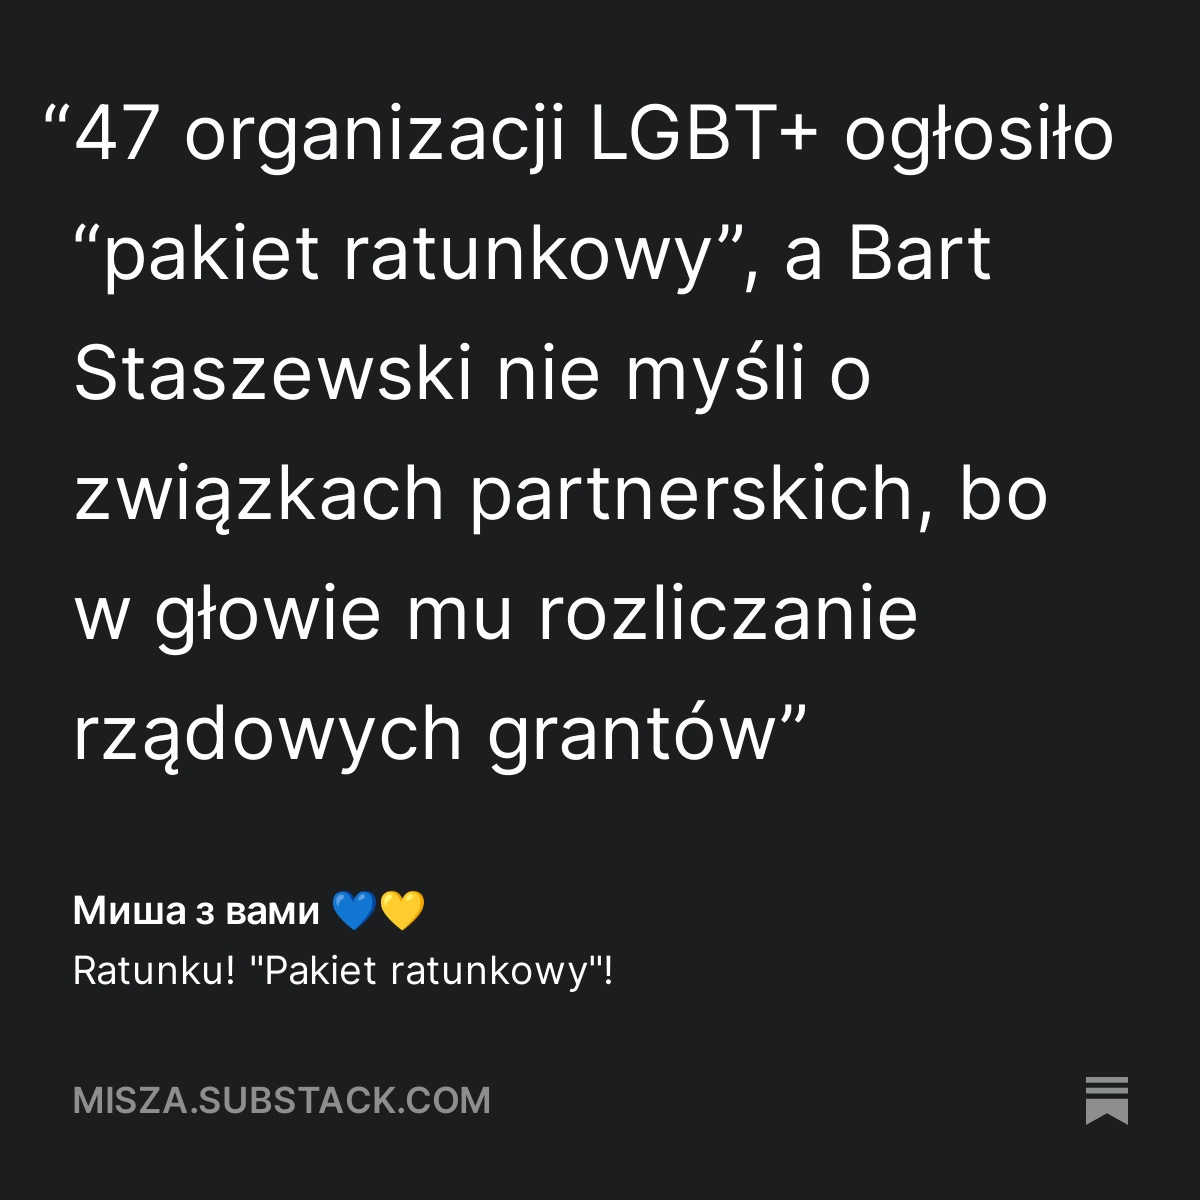 "47 organizacji LGBT+ ogłosiło "pakiet ratunkowy", a Bart Staszewski nie myśli o związkach partnerskich, bo w głowie mu rozliczanie rządowych grantów" - cytat z artykułu "Ratunku! "Pakiet ratunkowy"!" misza.substack.com